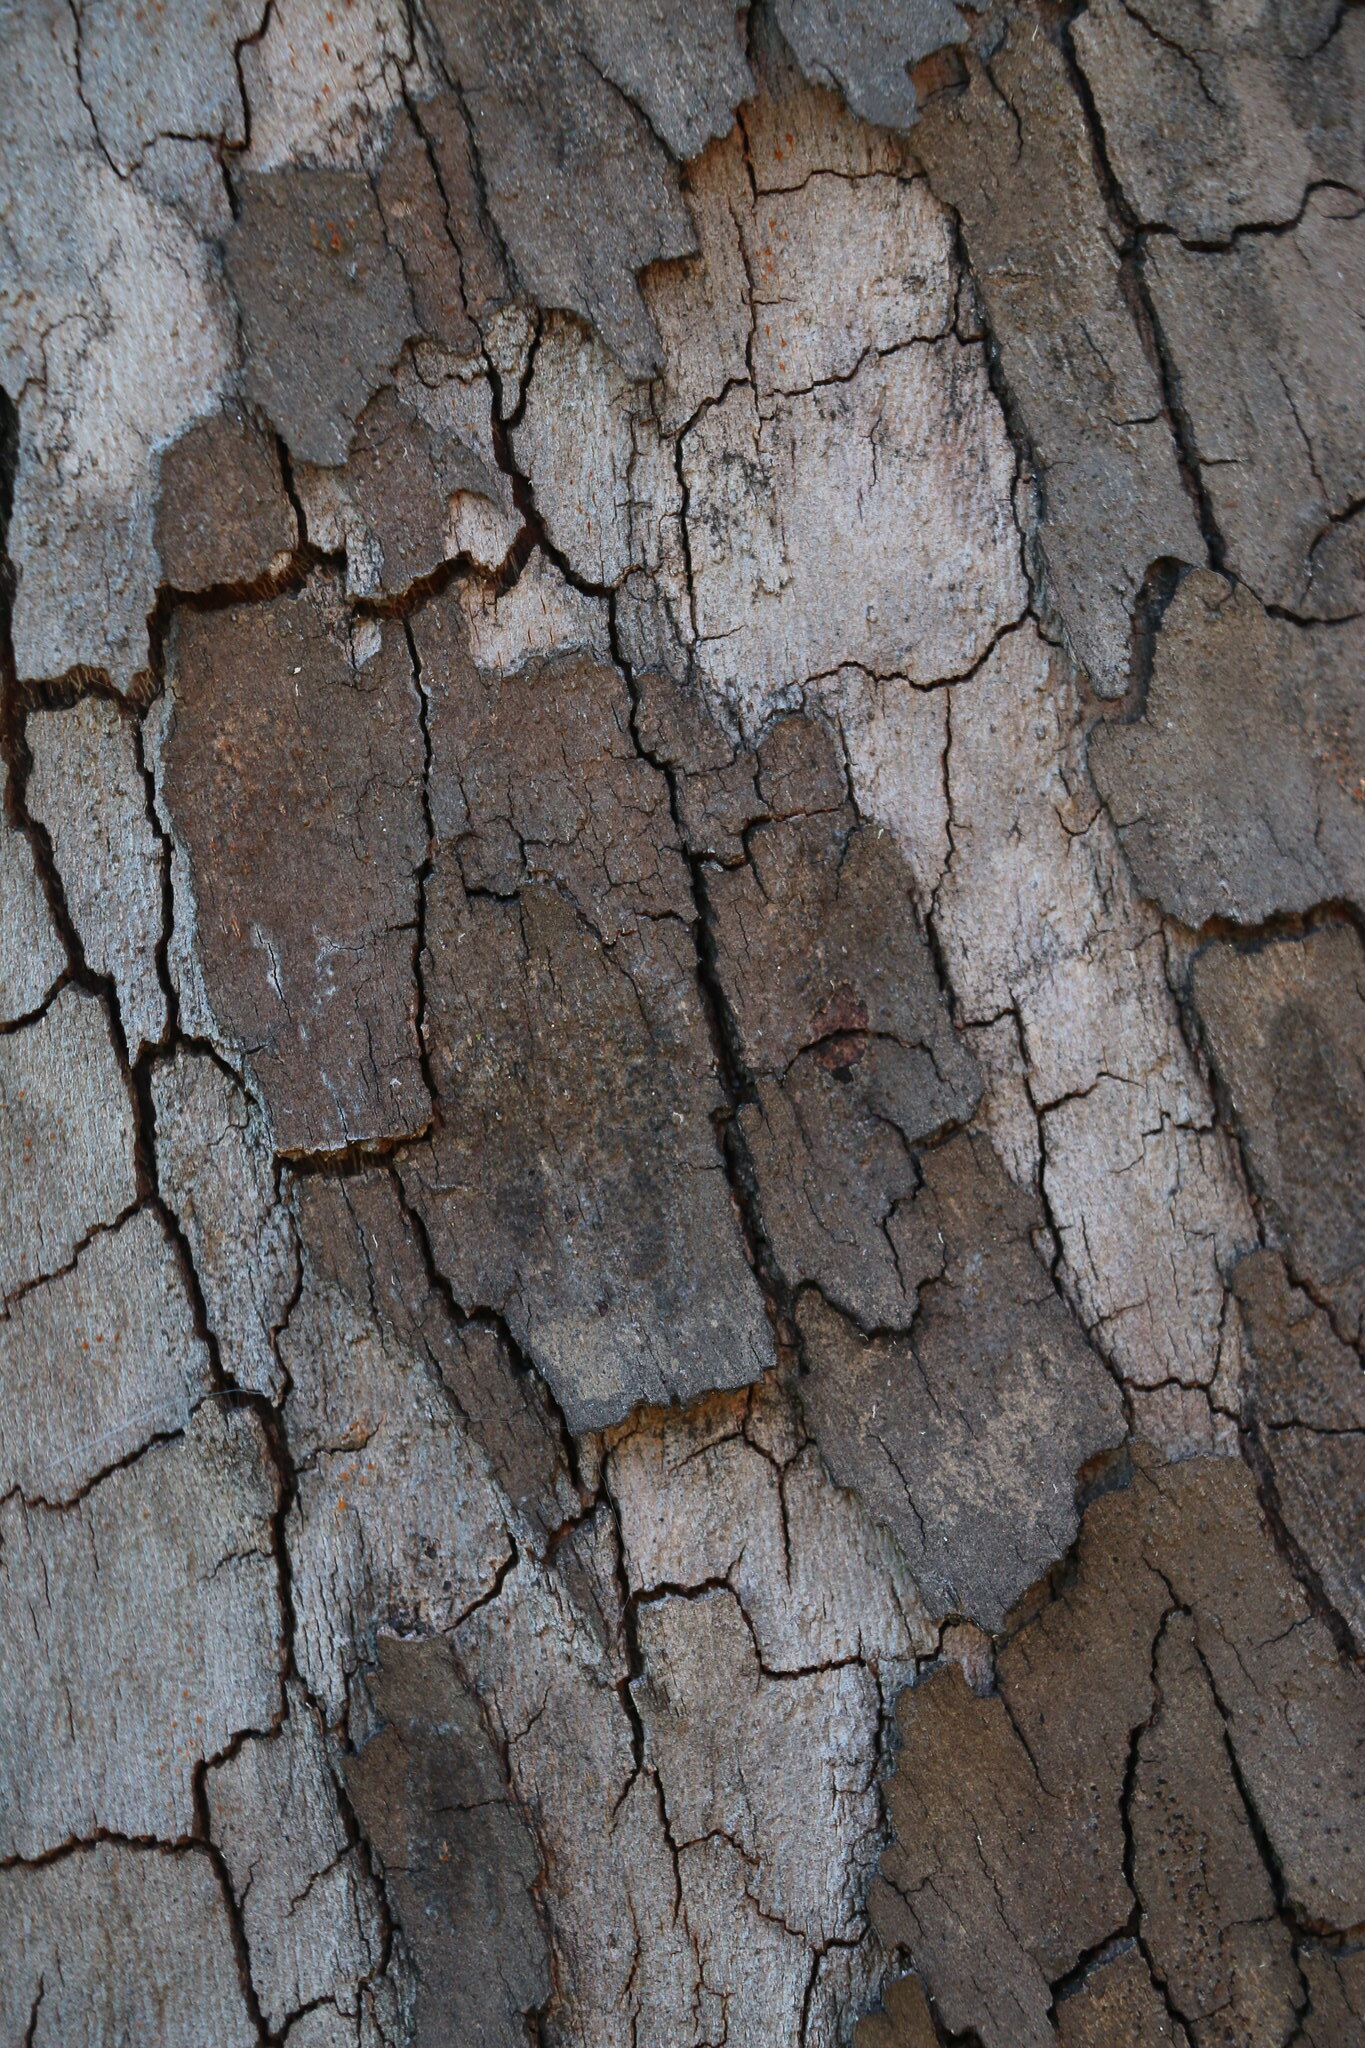 Tree Texture (SOTC 344/365)